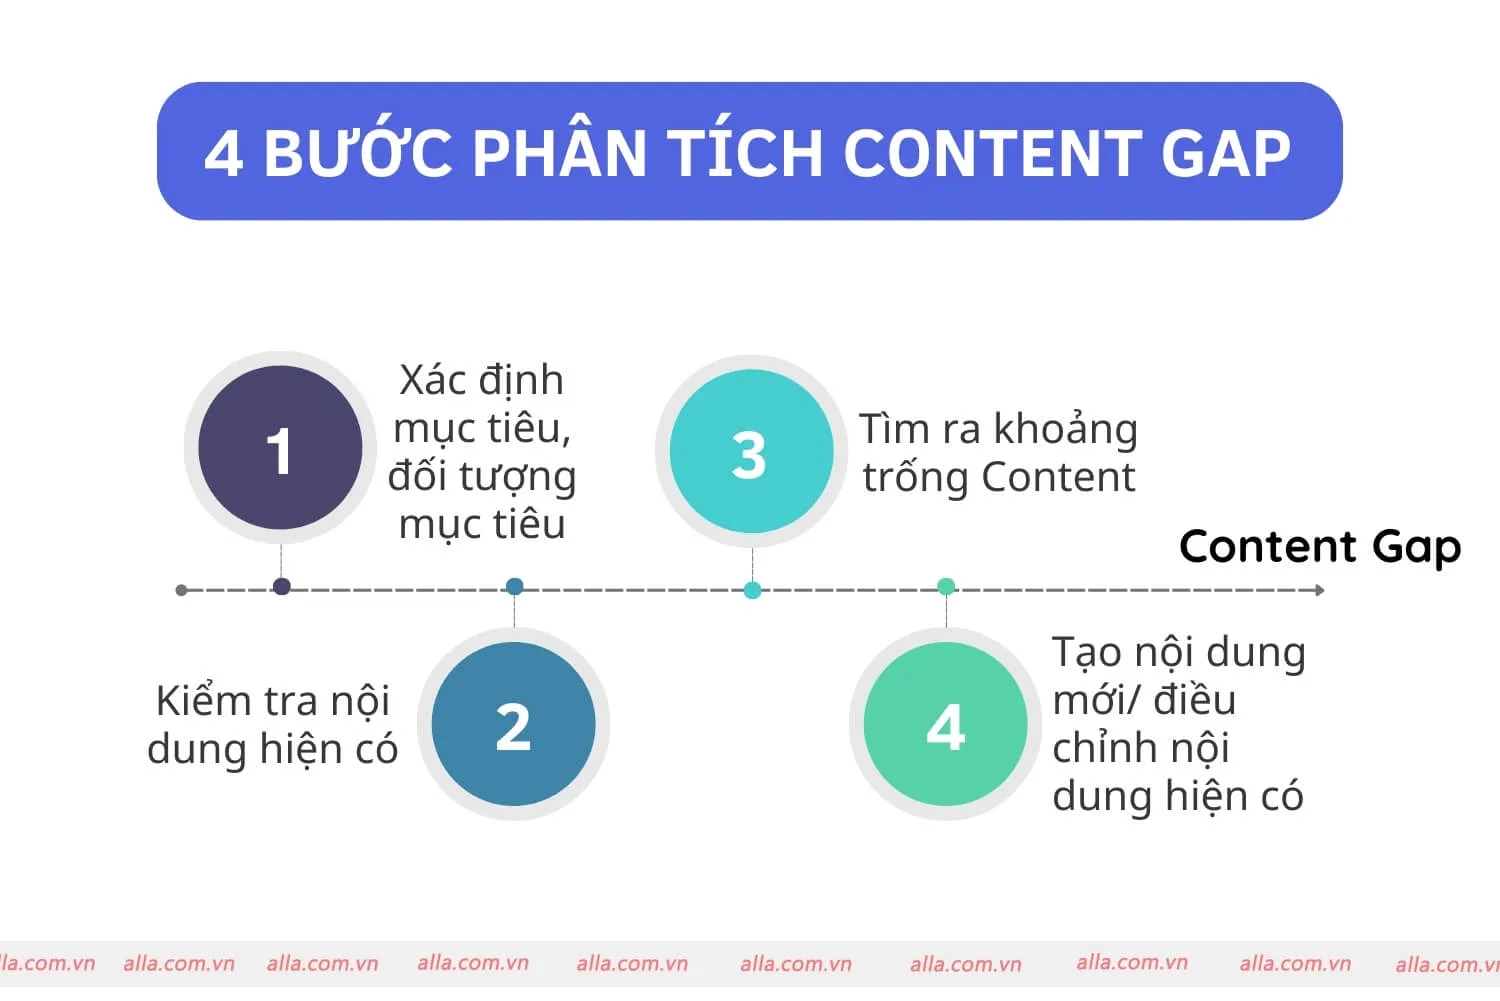 Các bước phân tích Content Gap